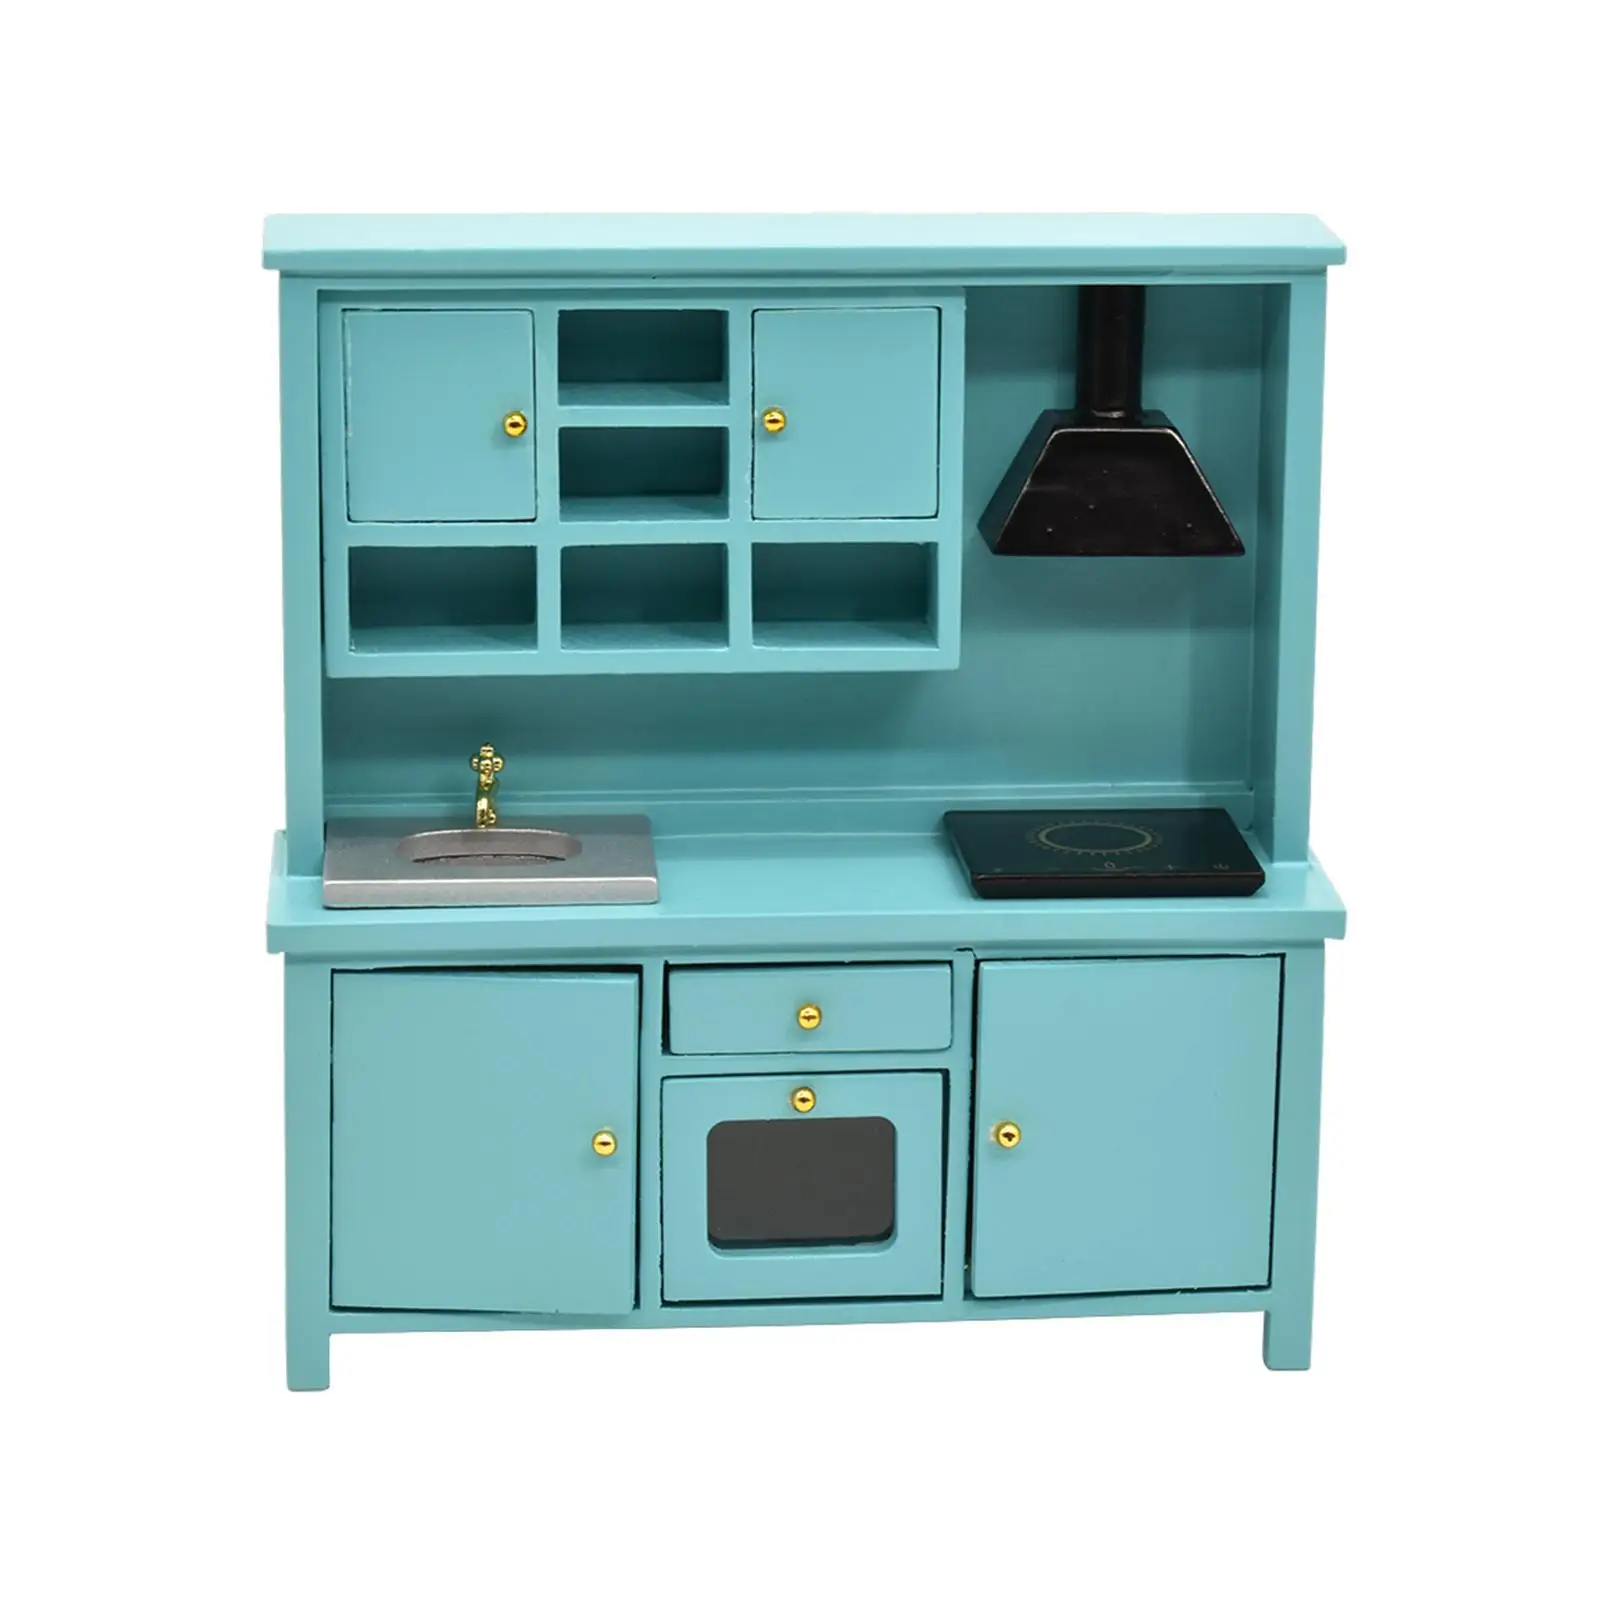 Mini Cabinet Furniture Dollhouse Kitchen Accessories for Micro Landscape